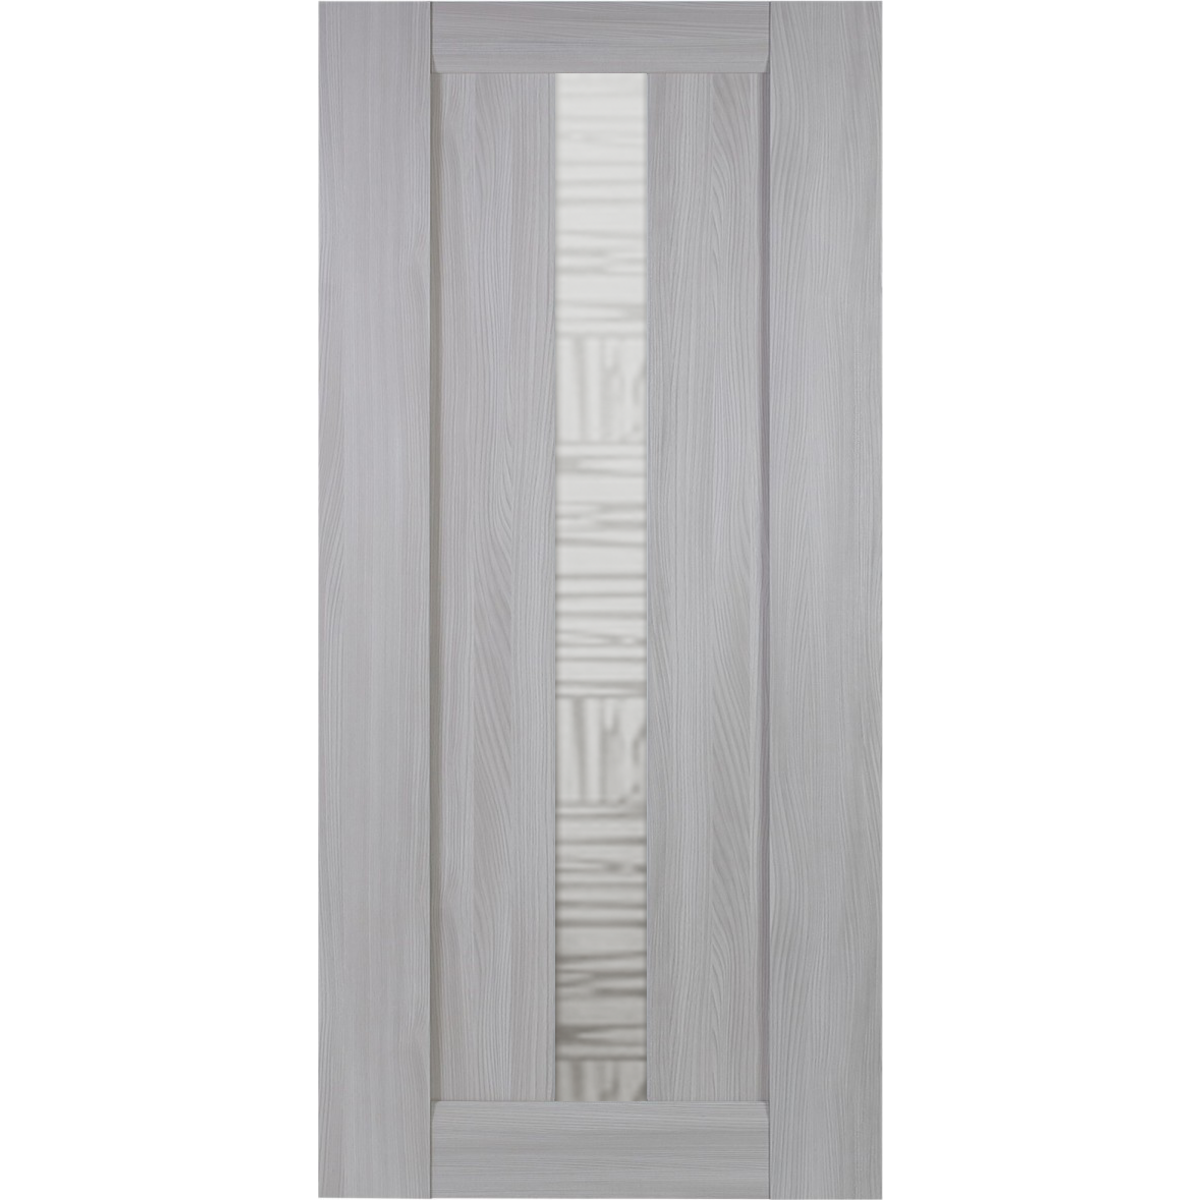 Дверь межкомнатная остекленная Челси 60x200 см, цвет ясень скандинавский